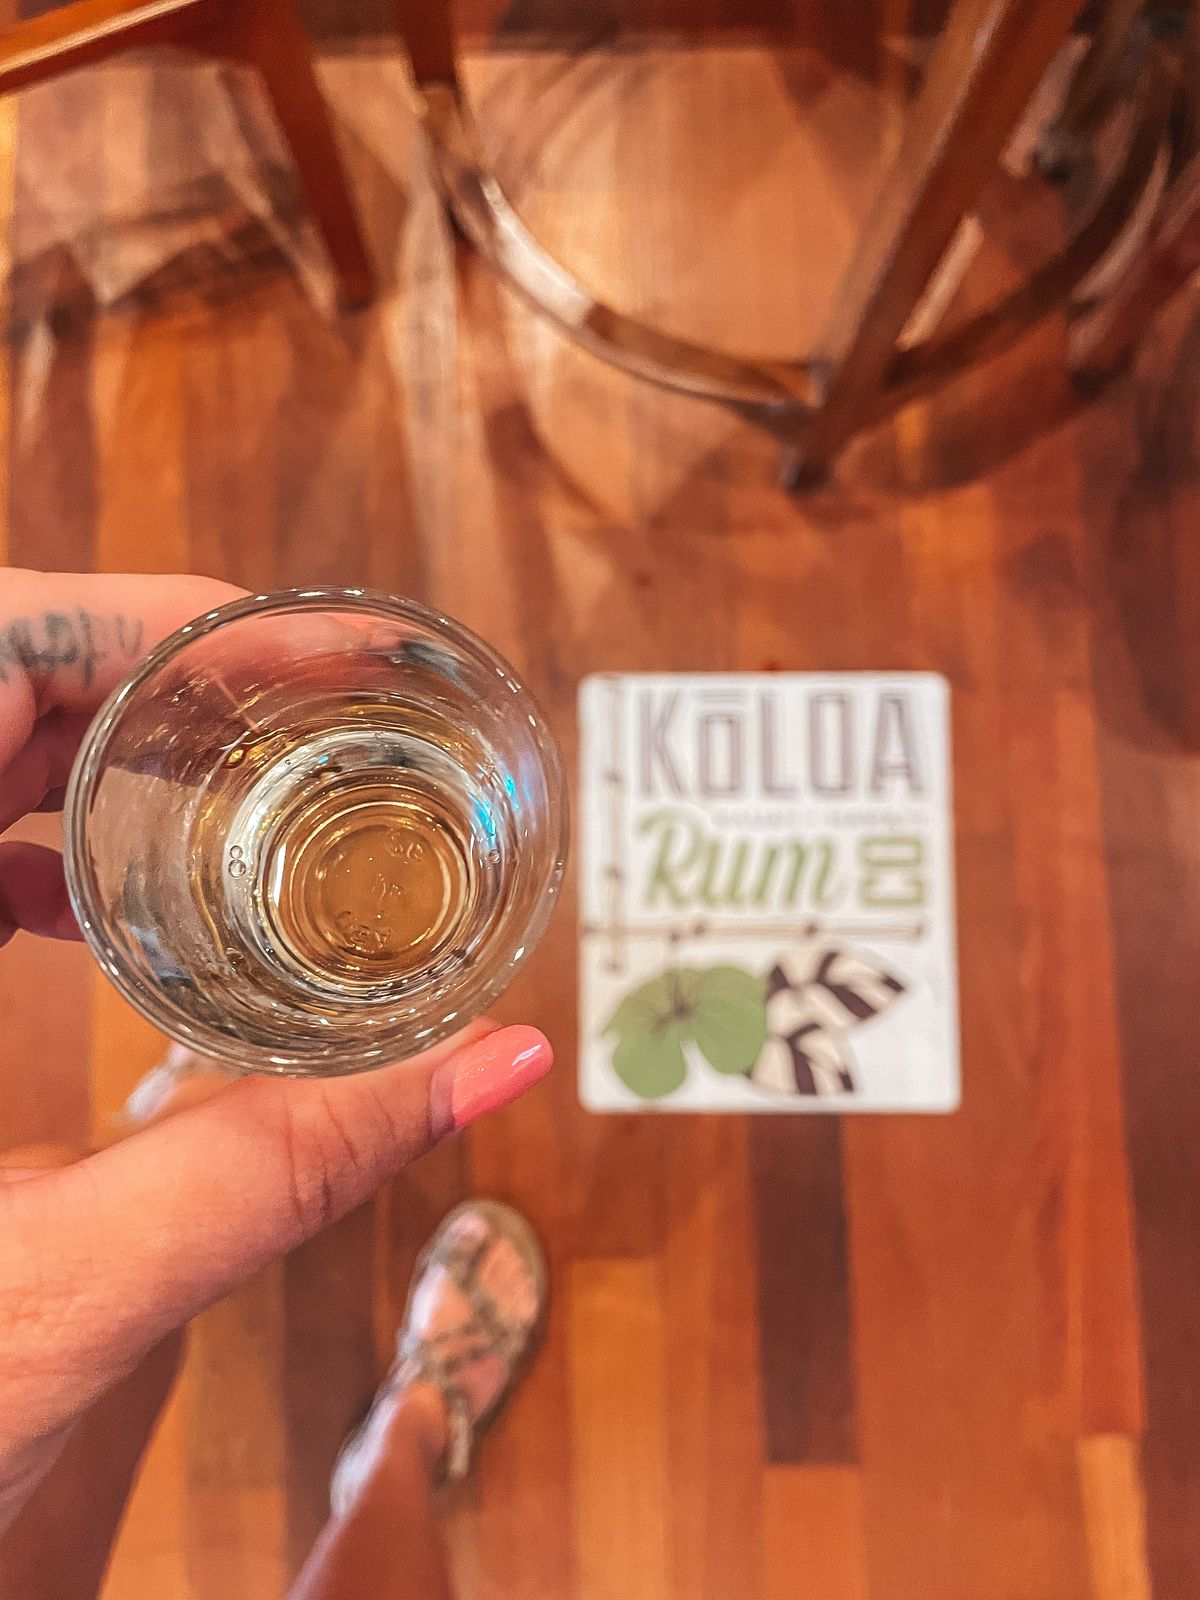 Koloa rum tasting in Kauai